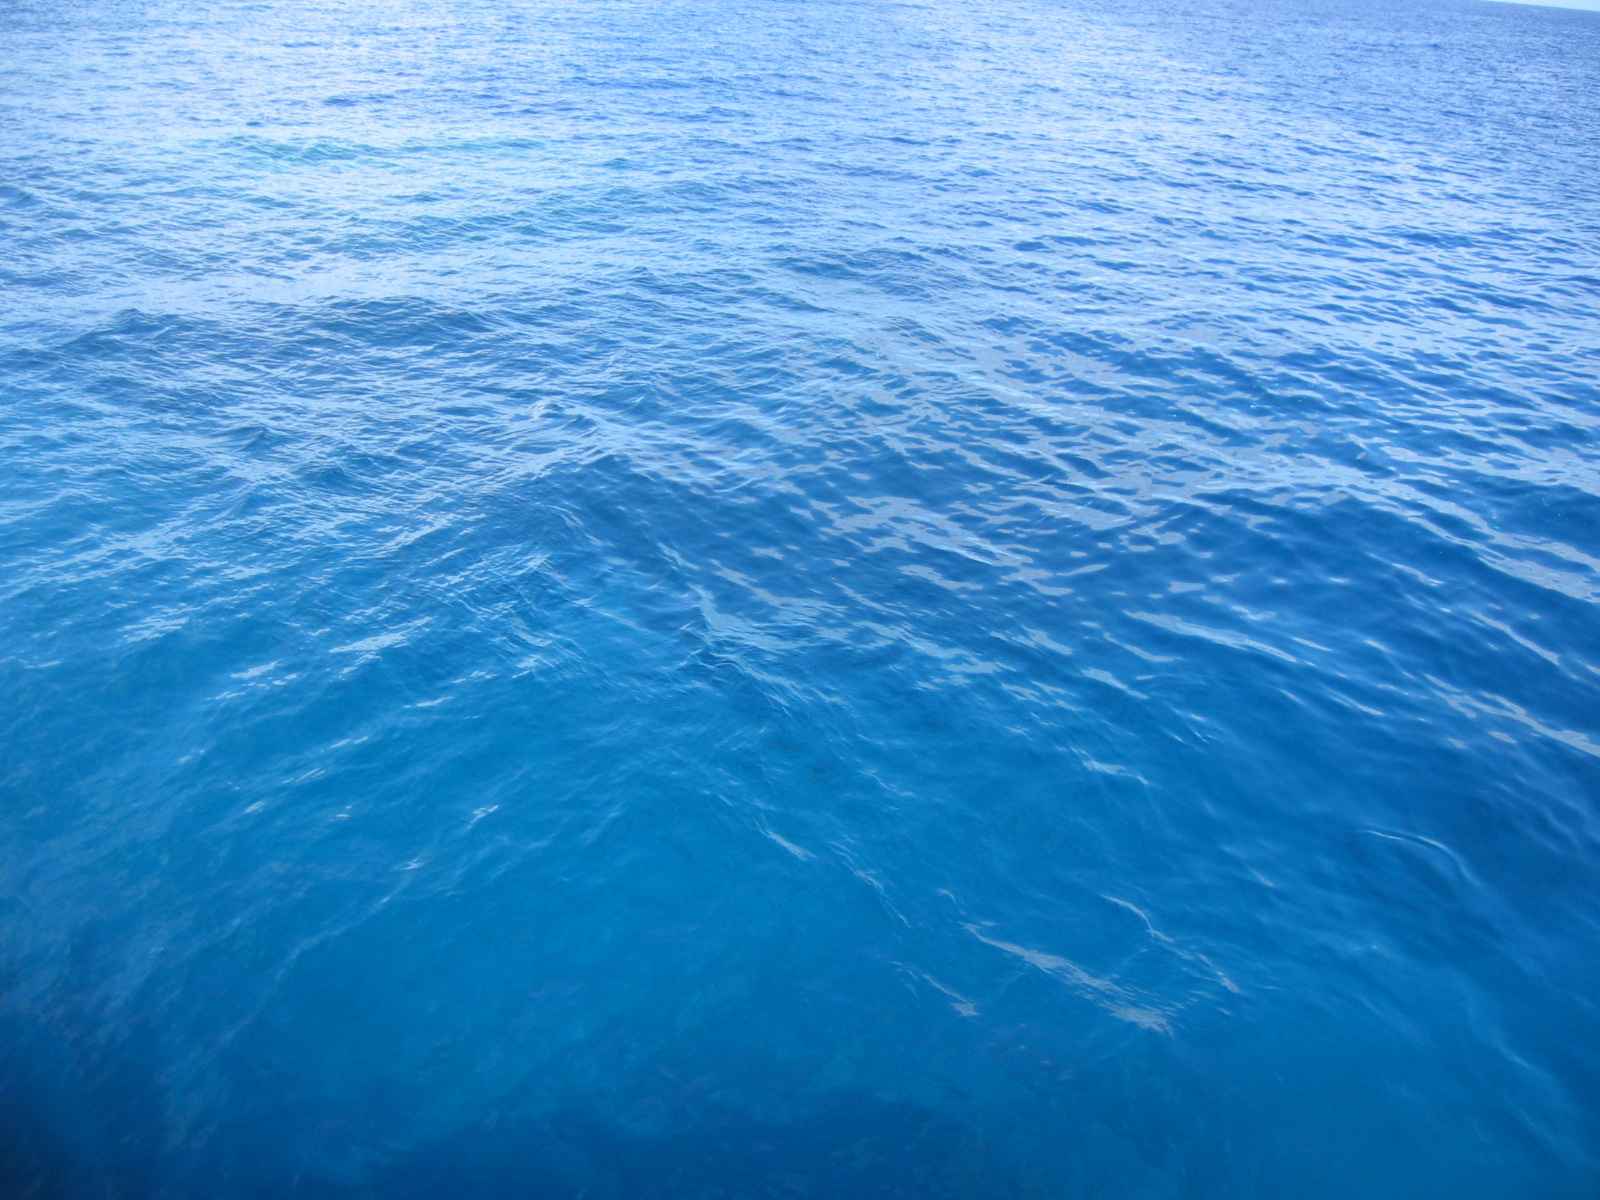  Gambar Air Laut  Pasang Gambar  C